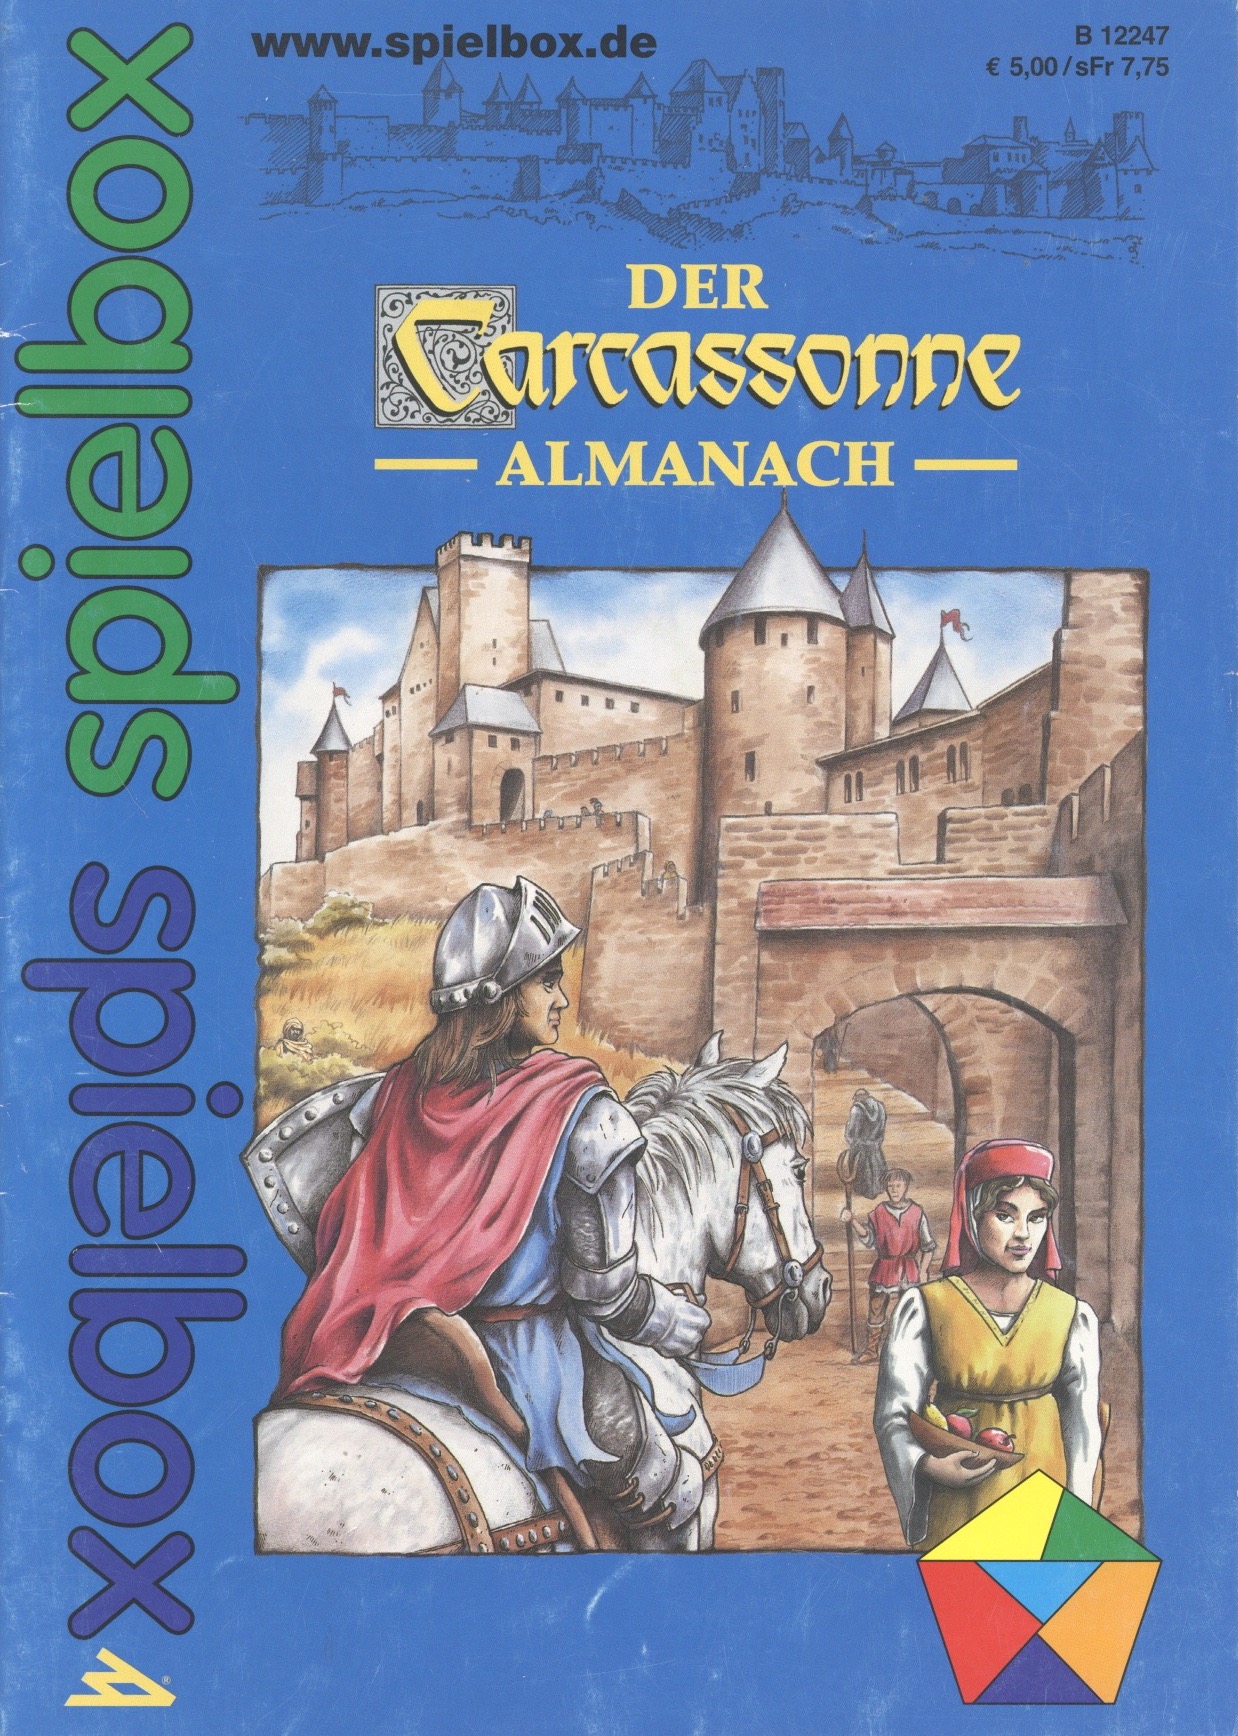 Der Carcassonne Almanach